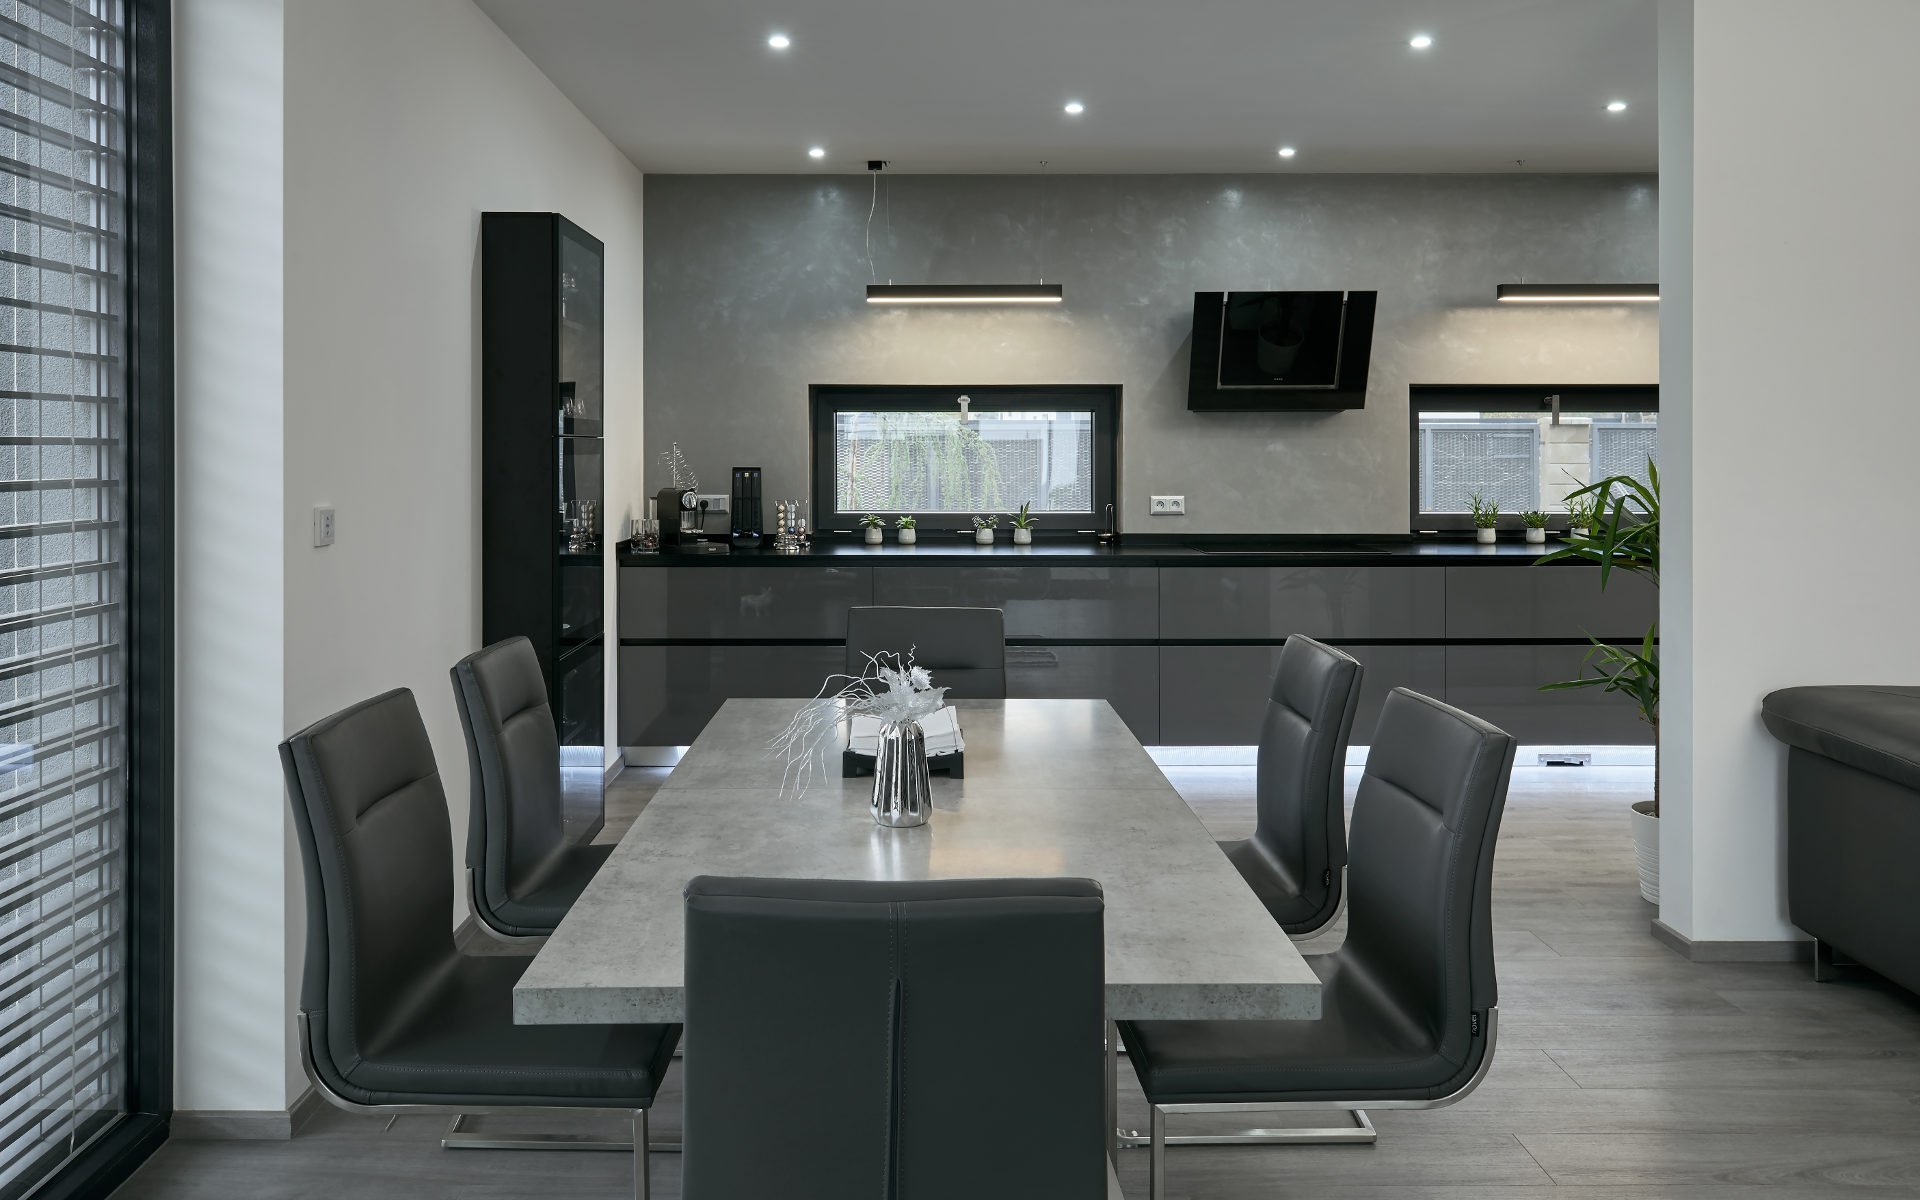 Osobitý interiér, kterému vládnou barvy šedi. Šedé odstíny zde převládají nejen na nábytku, ale i na výmalbě nebo podlahách.
